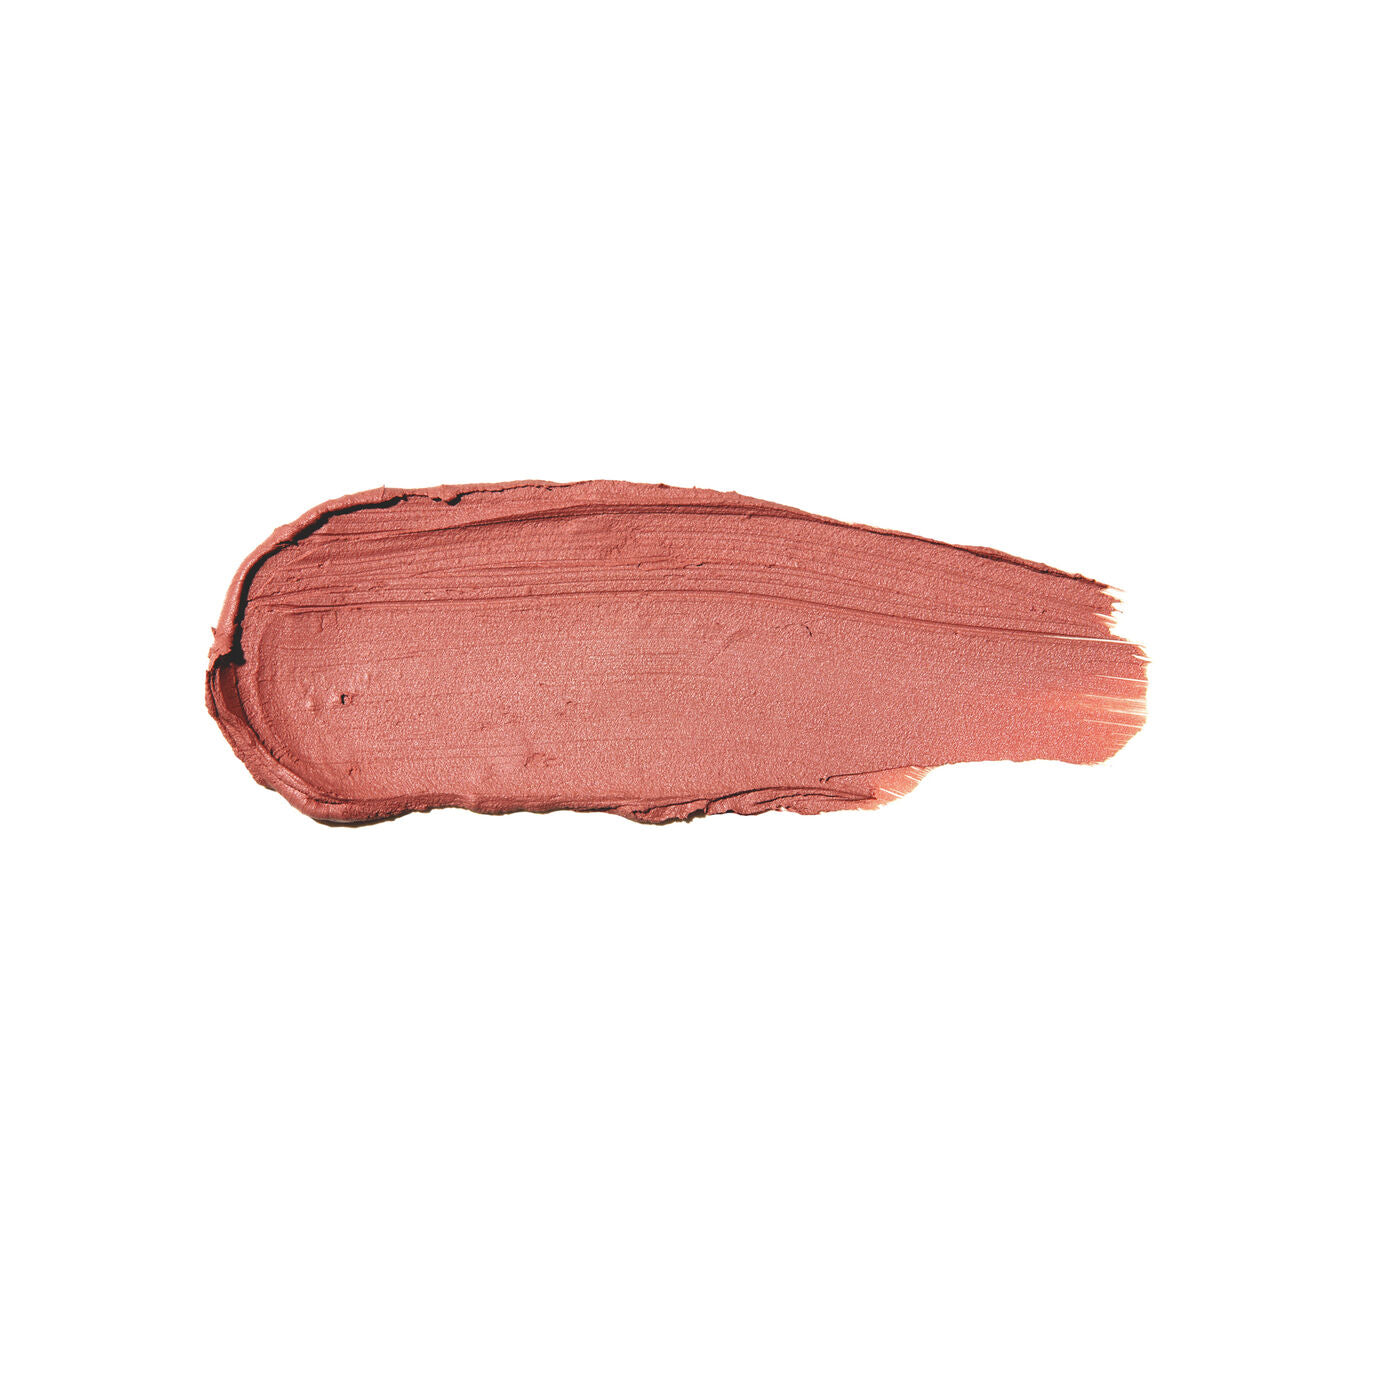 Anastasia Beverly Hills Matte Lipstick-Staunch